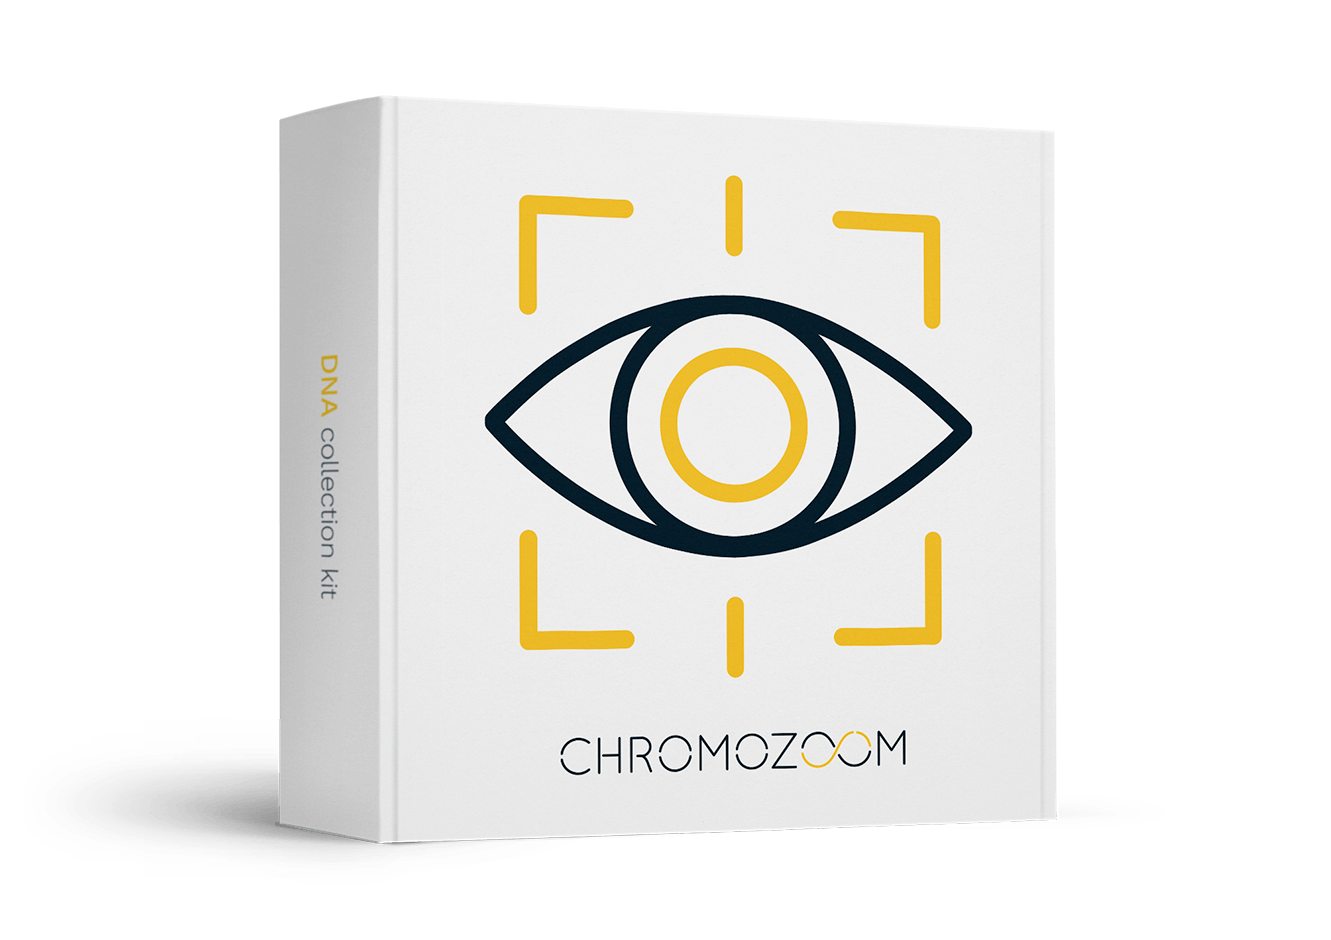 Chromozoom Vision DNA test